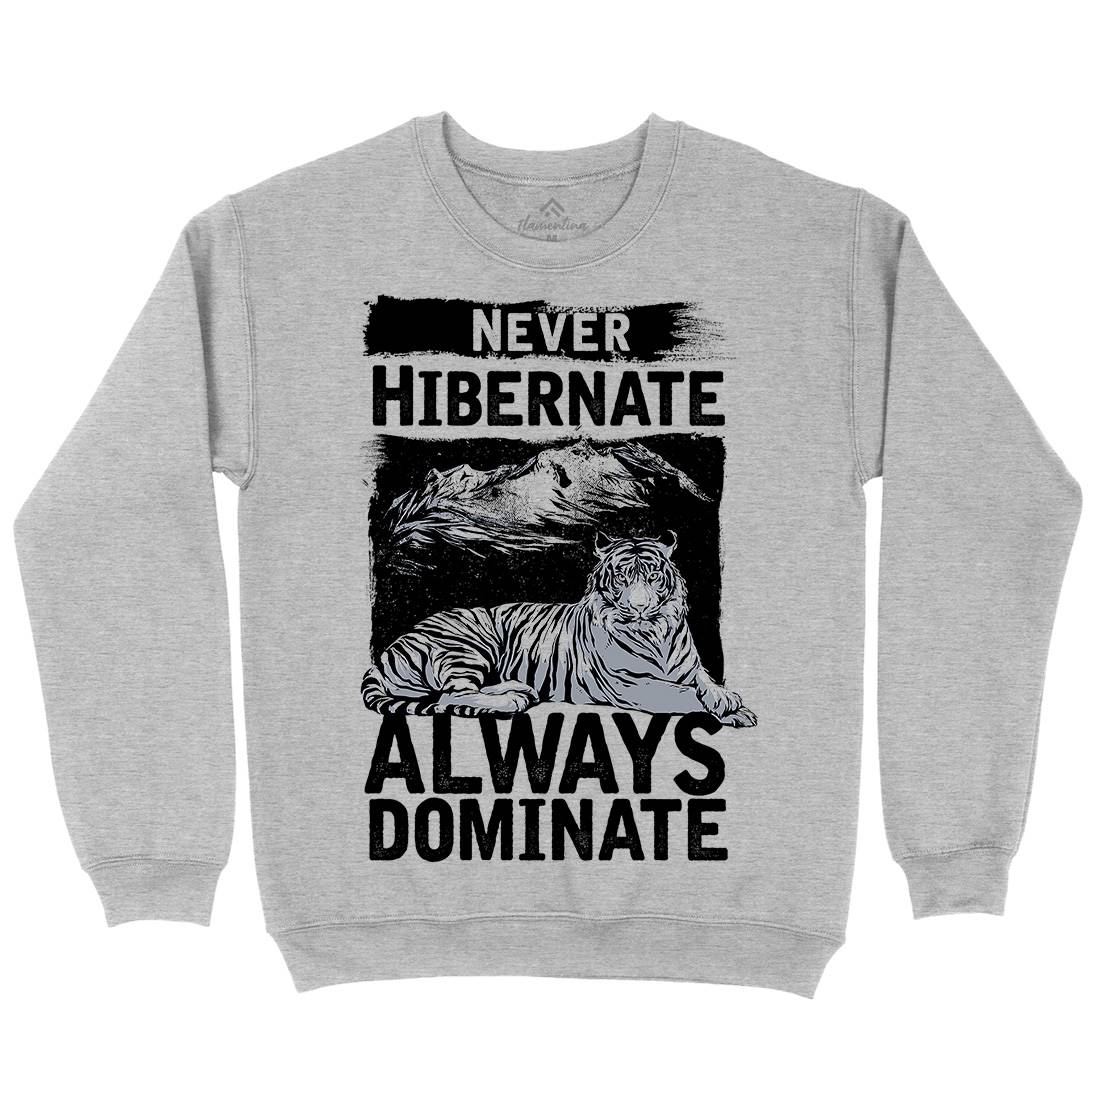 Never Hibernate Kids Crew Neck Sweatshirt Nature C968